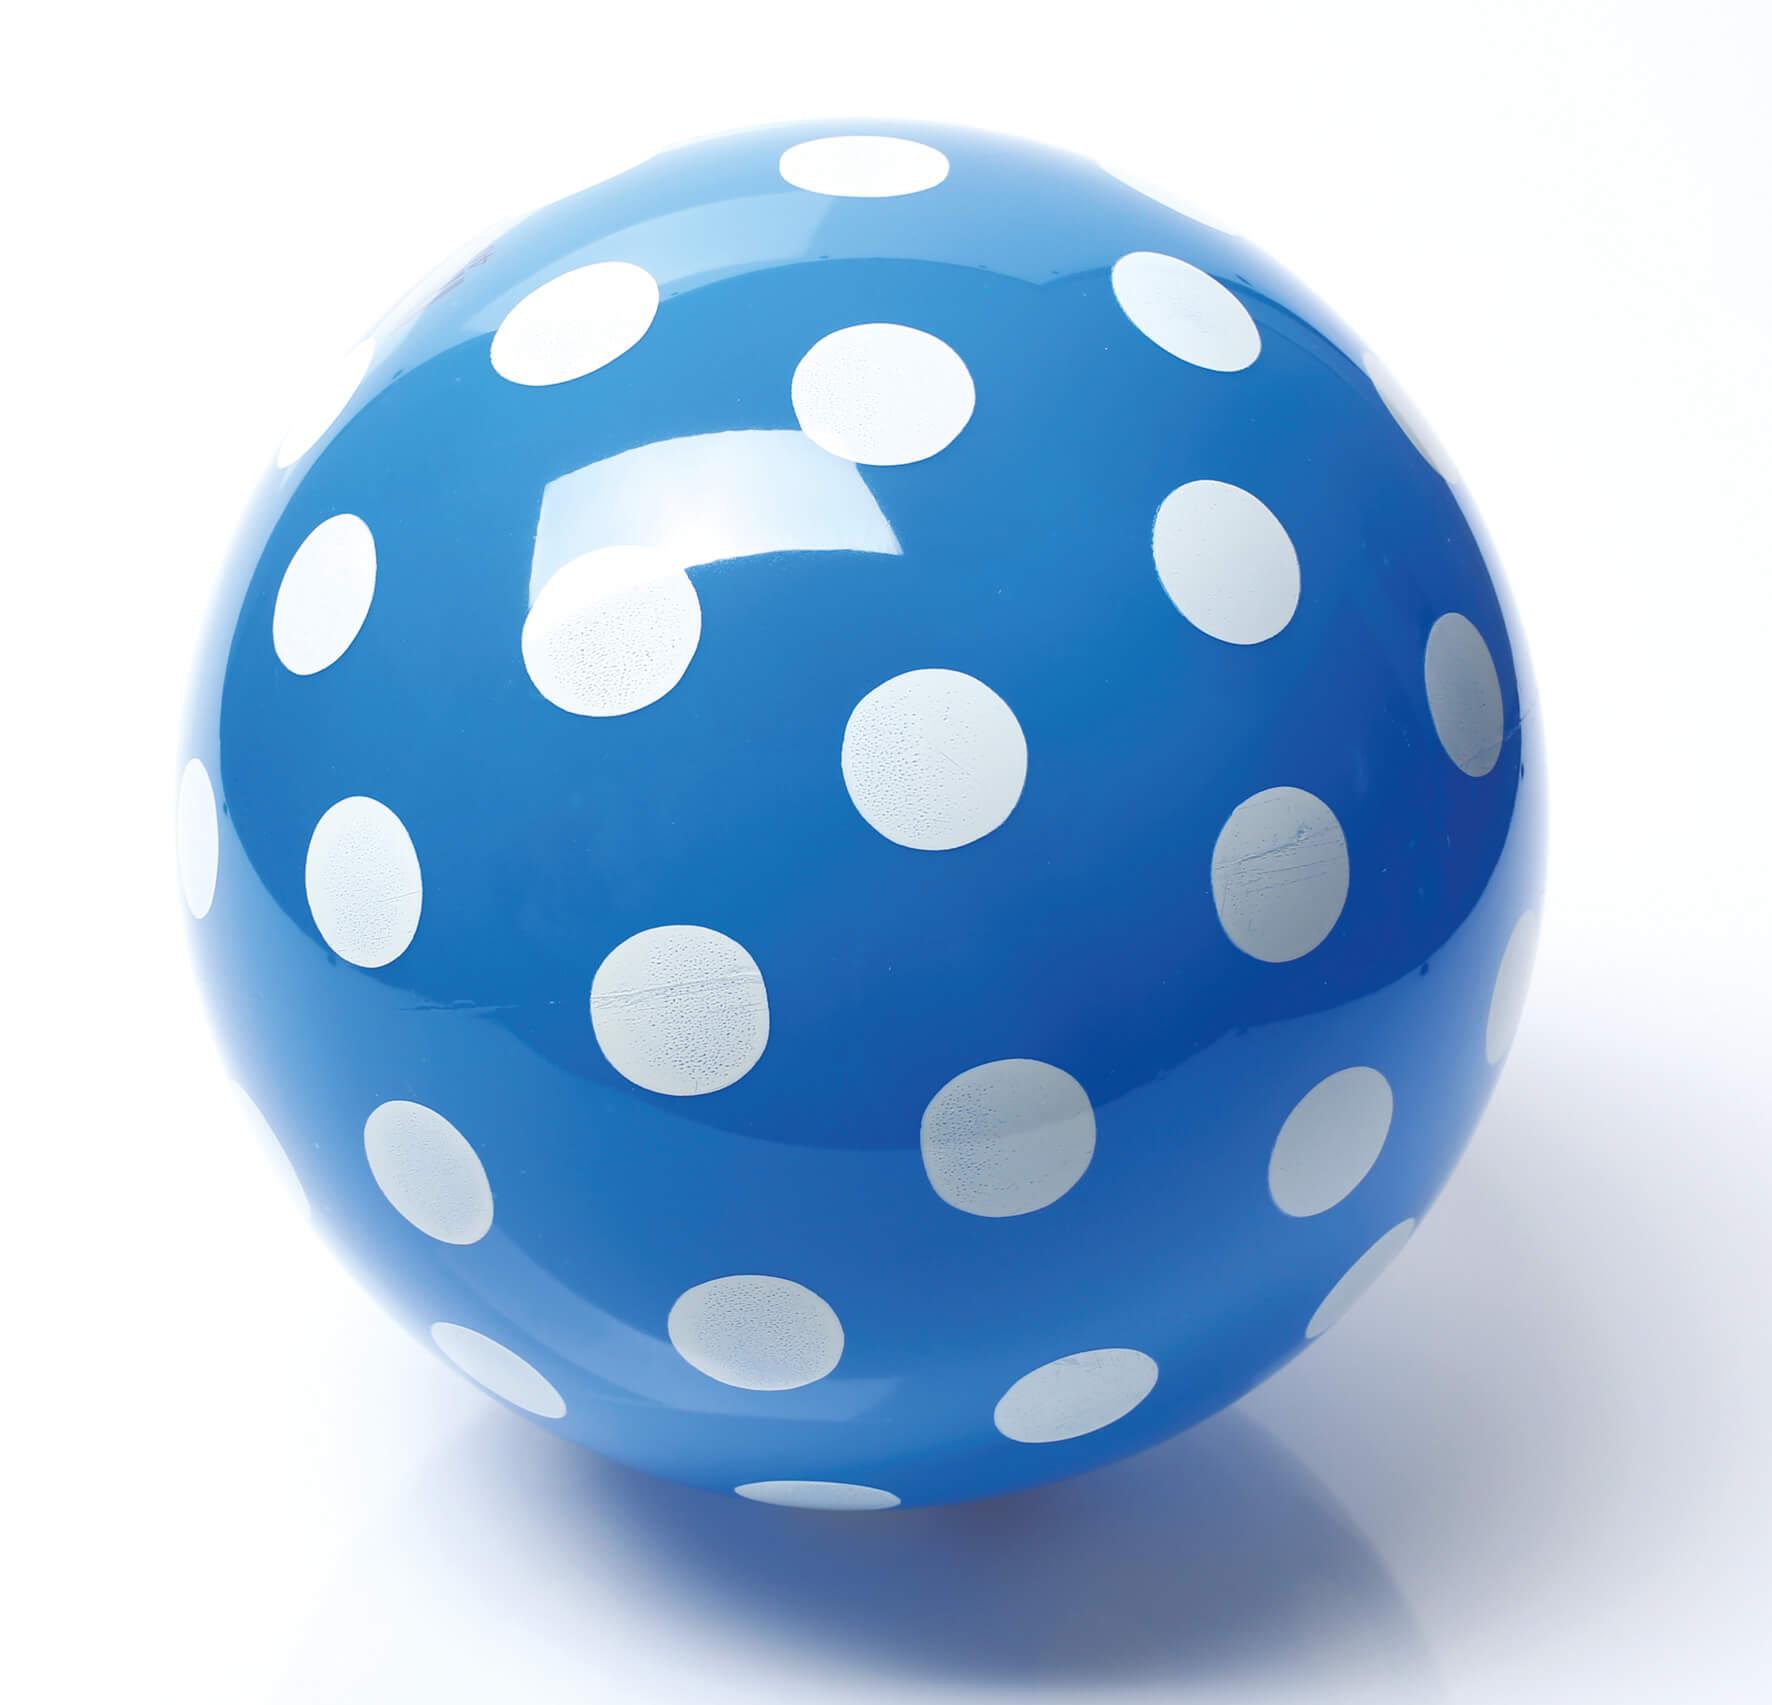 Ball Punkte blau/weiß groß - www. kunstundspiel .de 2171694